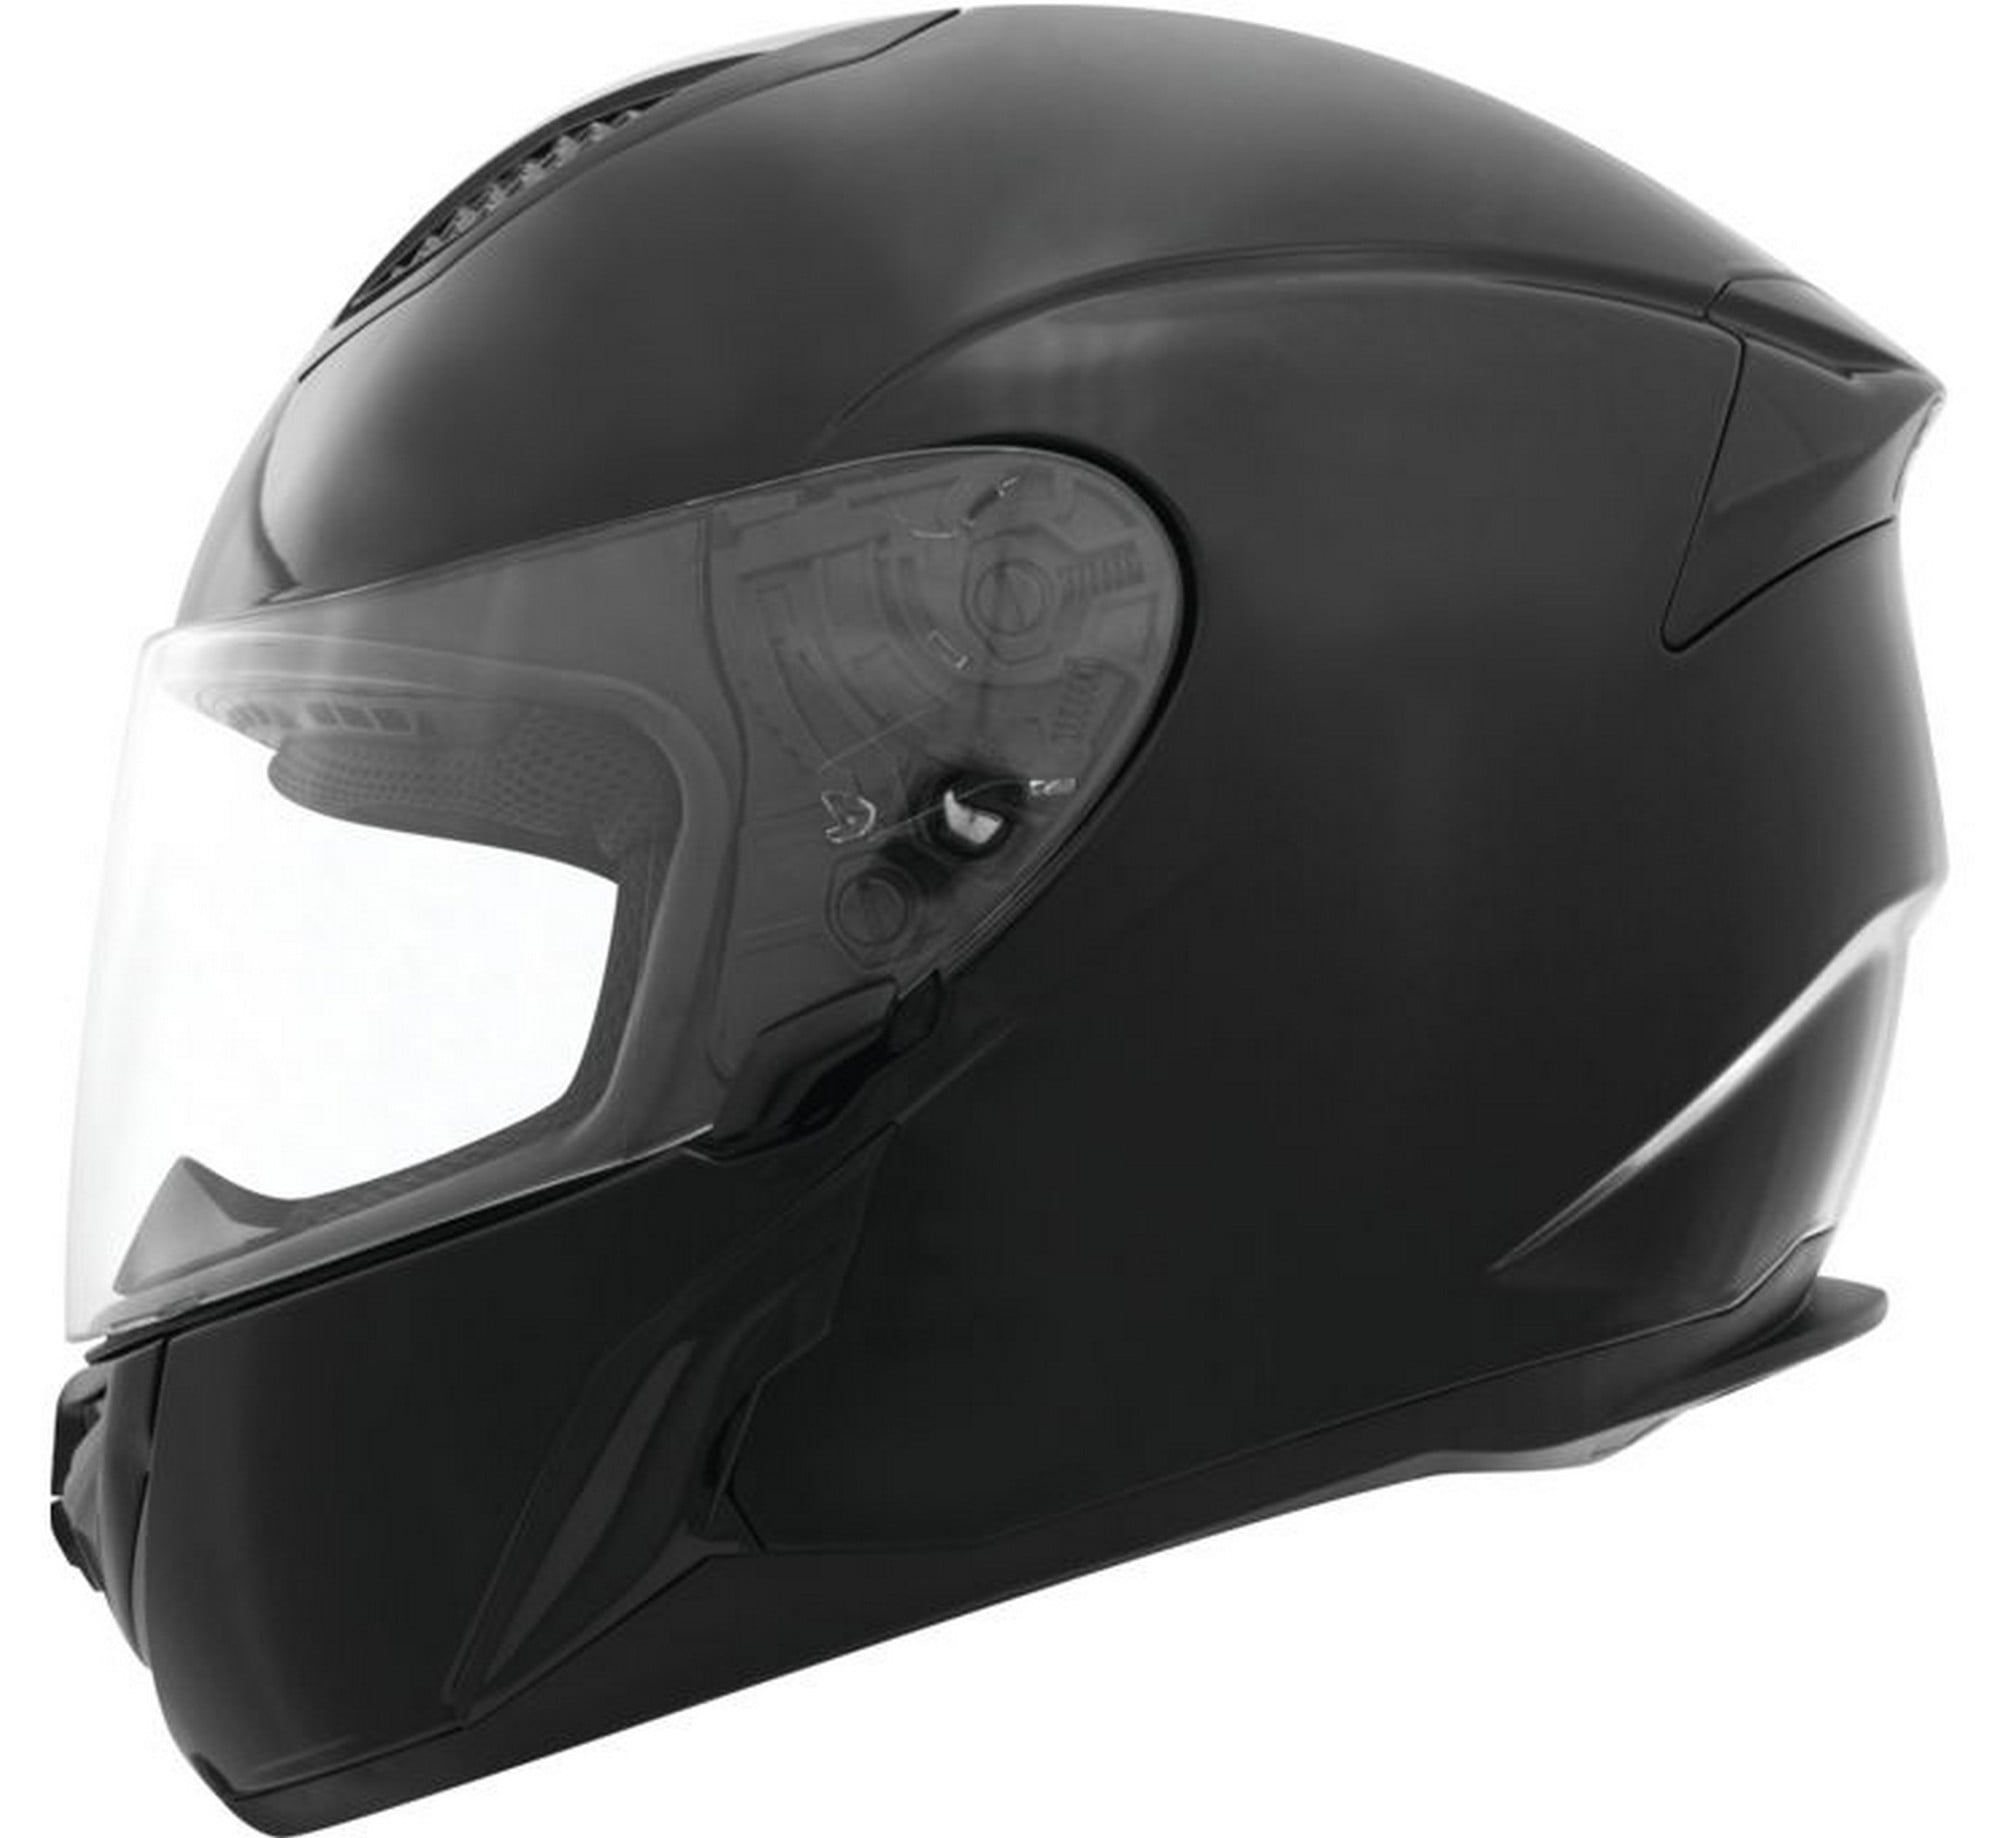 THH T-810 Solid Motorcycle Helmet Black XS